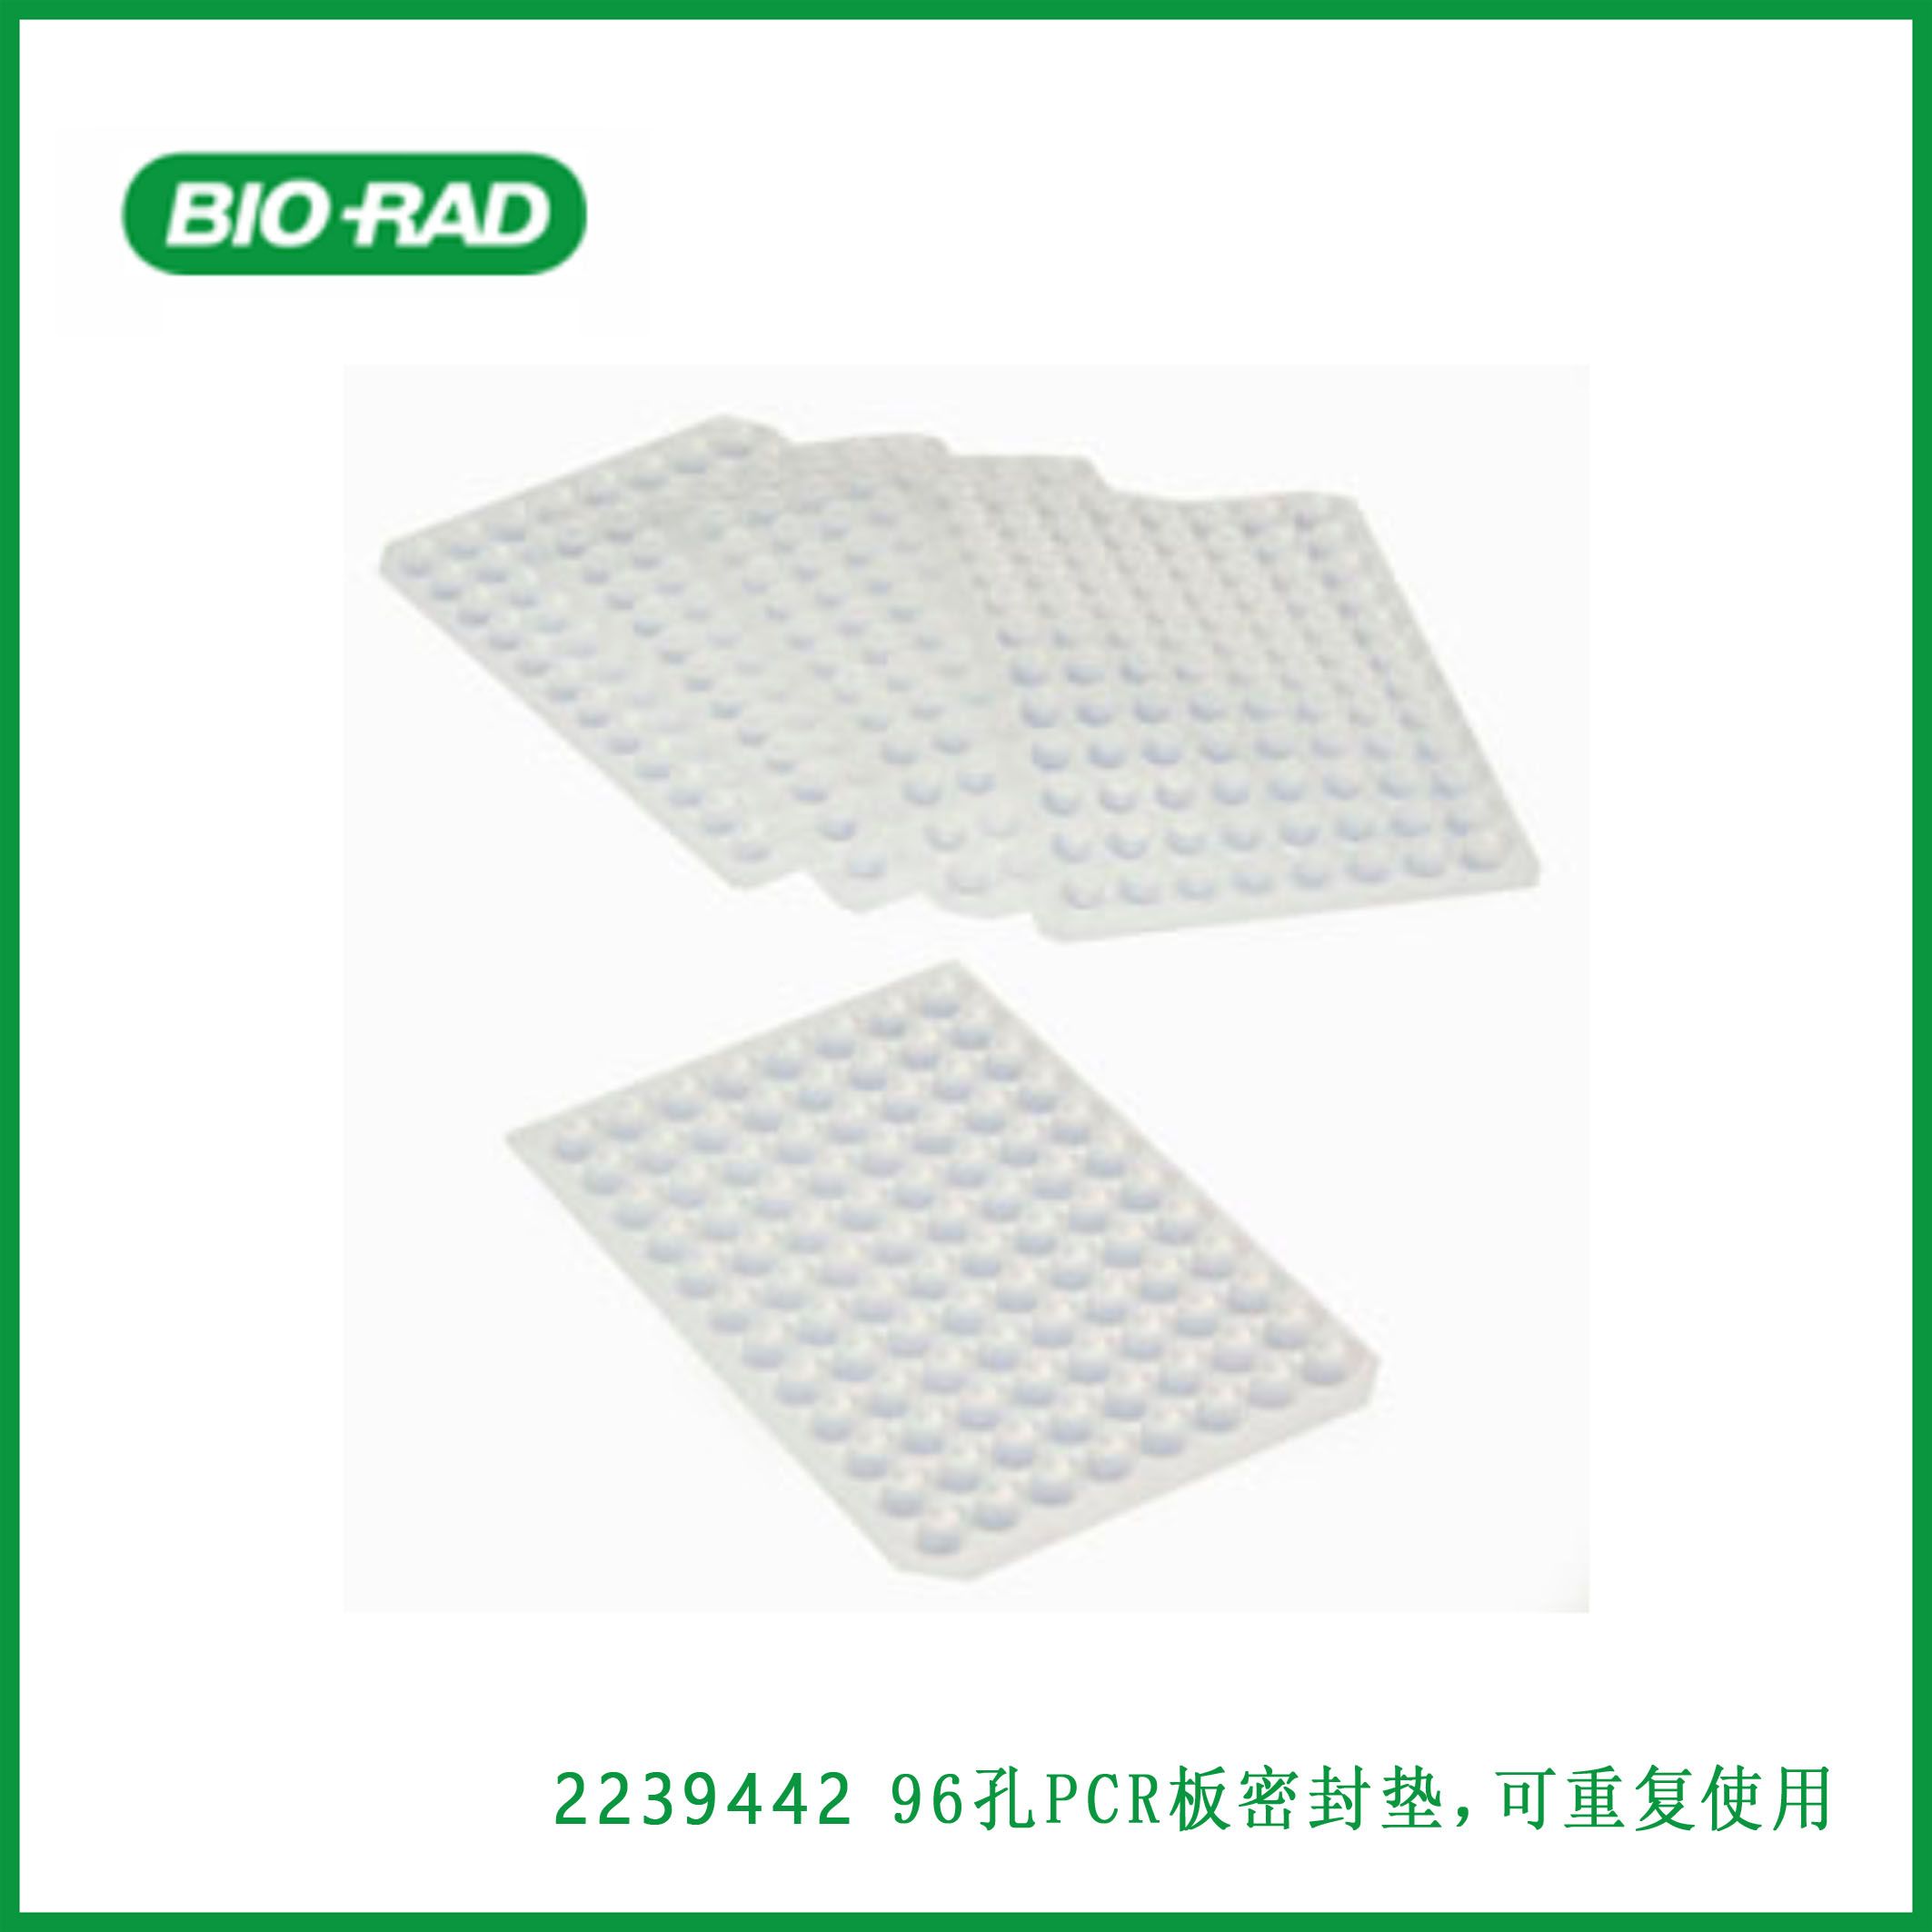 伯乐Bio-Rad2239442Sealing Mats for 96-Well PCR Plates, reusable，96孔PCR板密封垫，可重复使用，现货